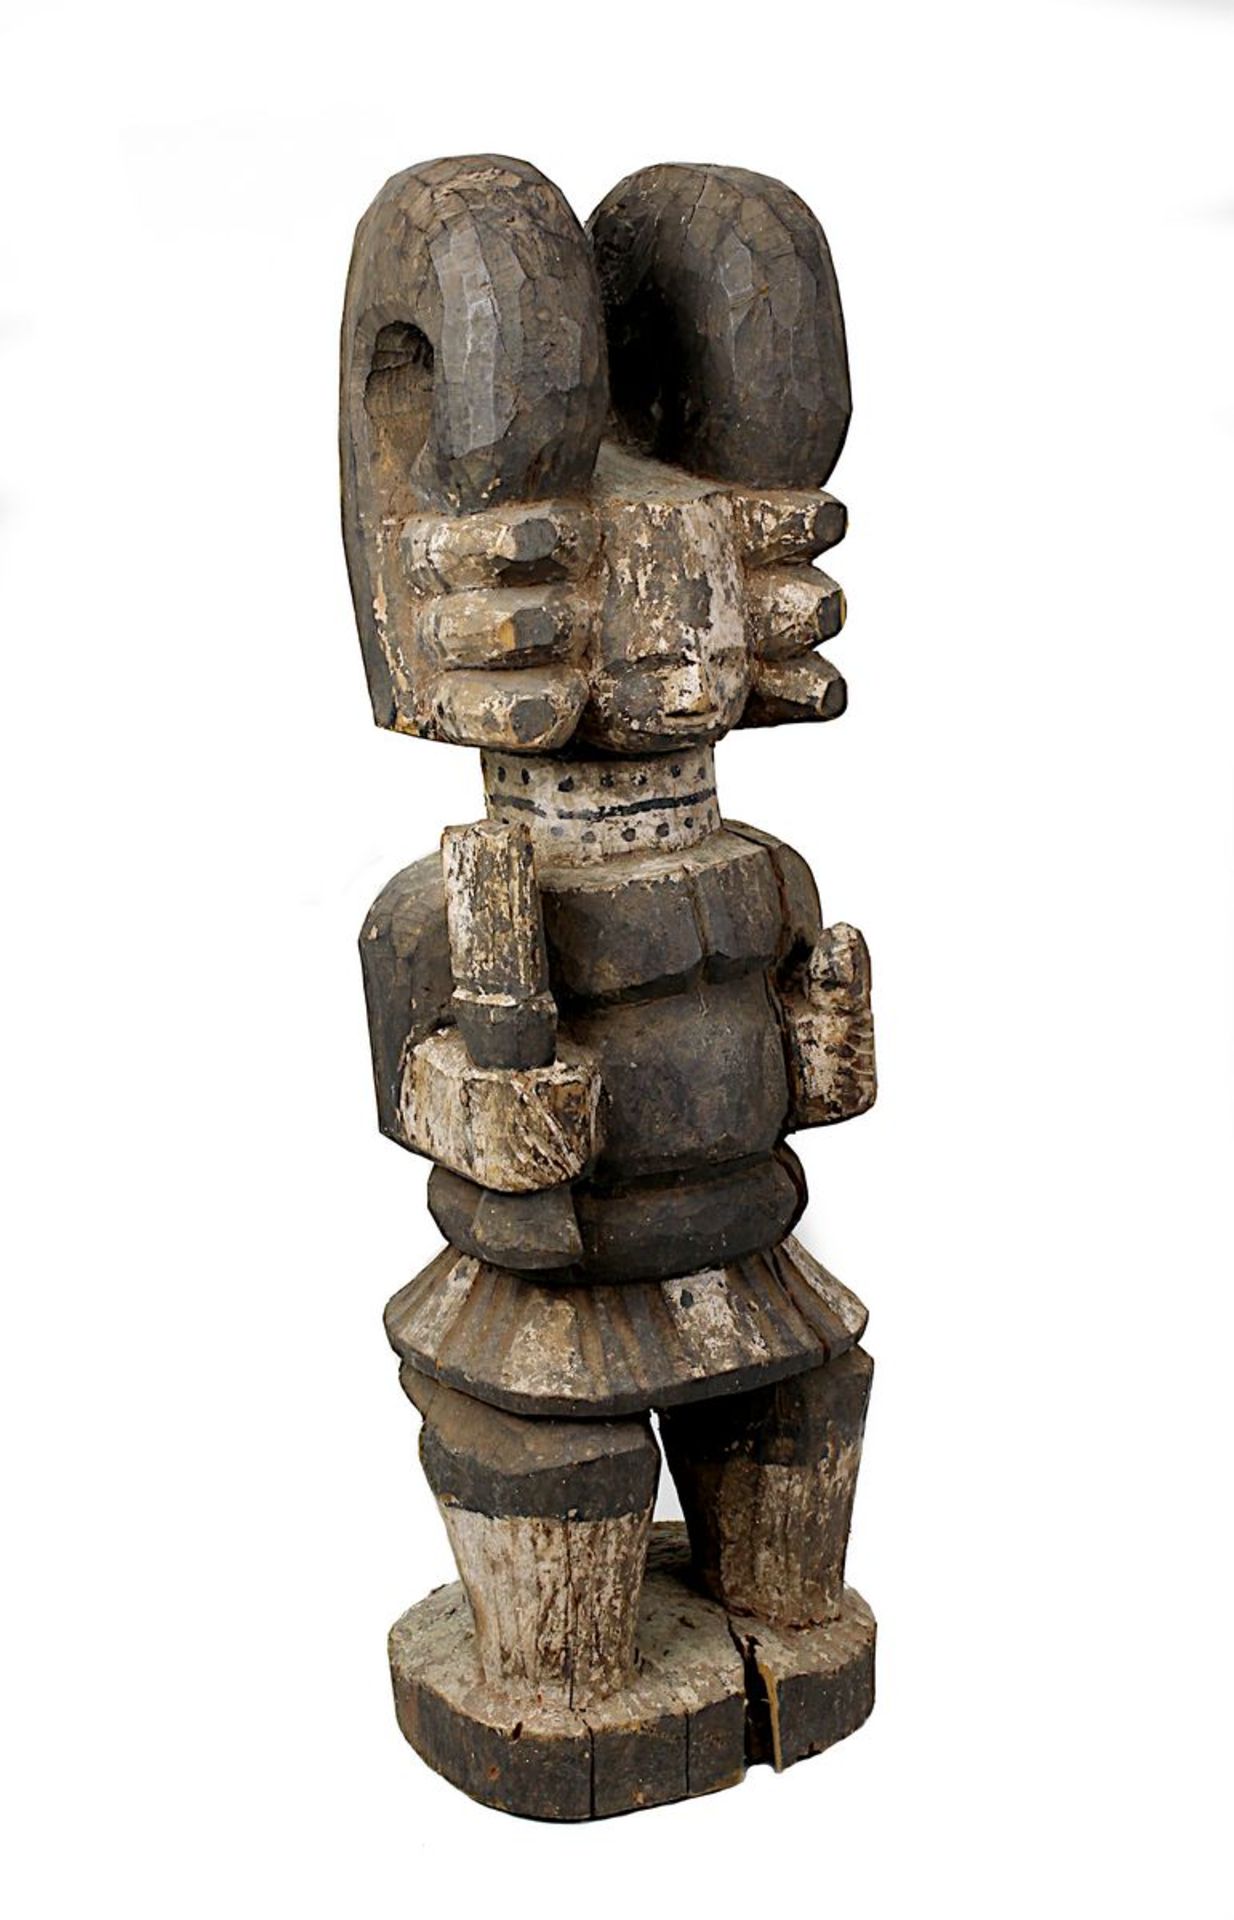 Große Ikenga-Figur, Igbo, Nigeria, Männerkultfigur in Form eines sitzenden Kriegers mit